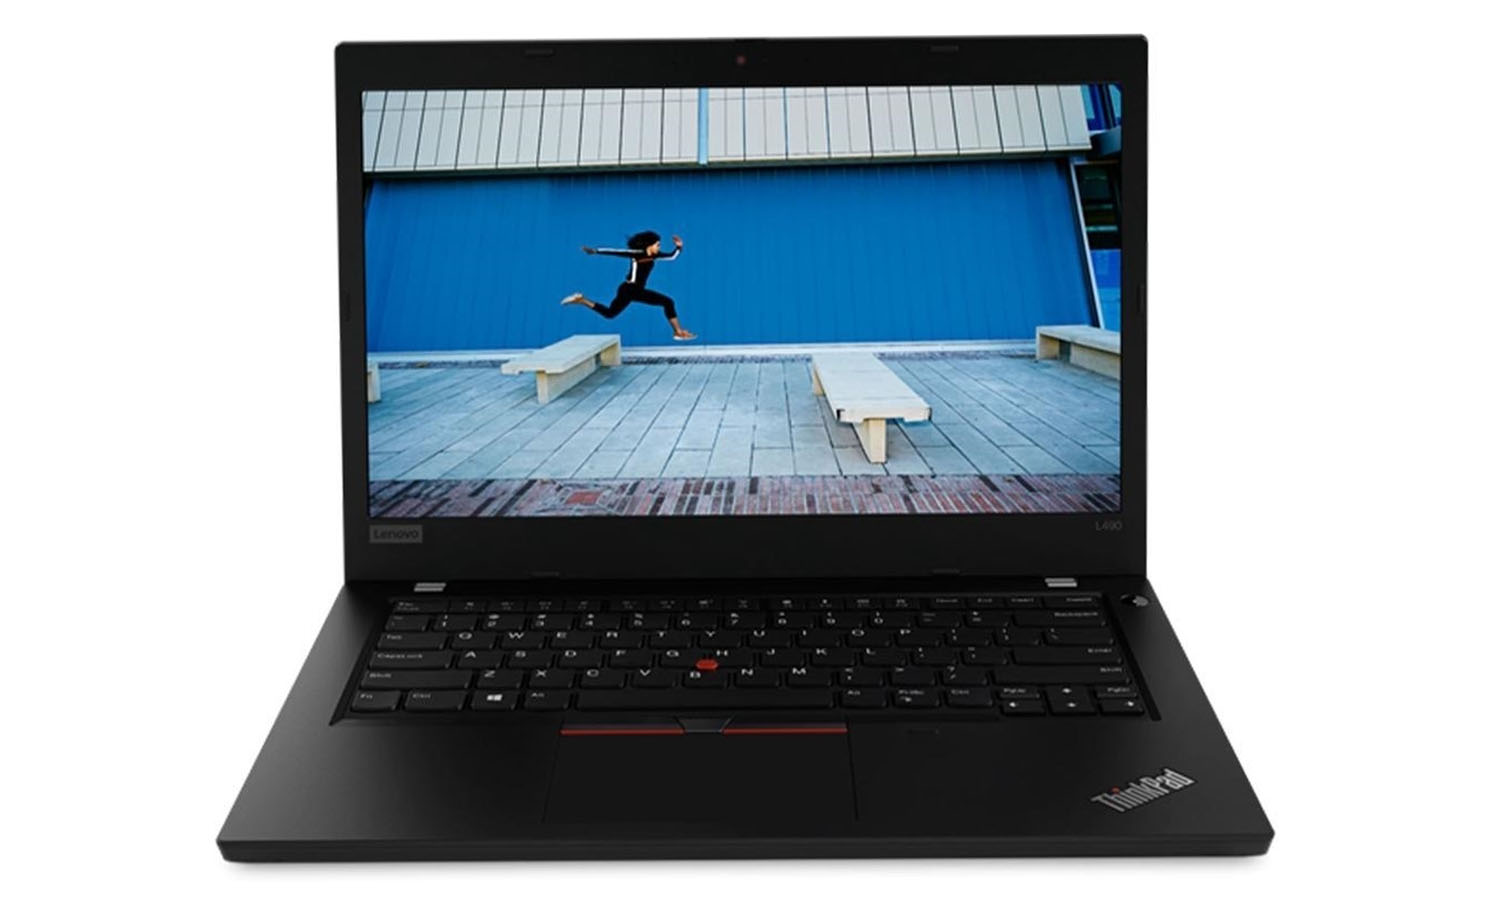 Lenovo ThinkPad L490 Intel Core i5 8th Gen 8GB RAM 256GB SSD Windows 10 Pro